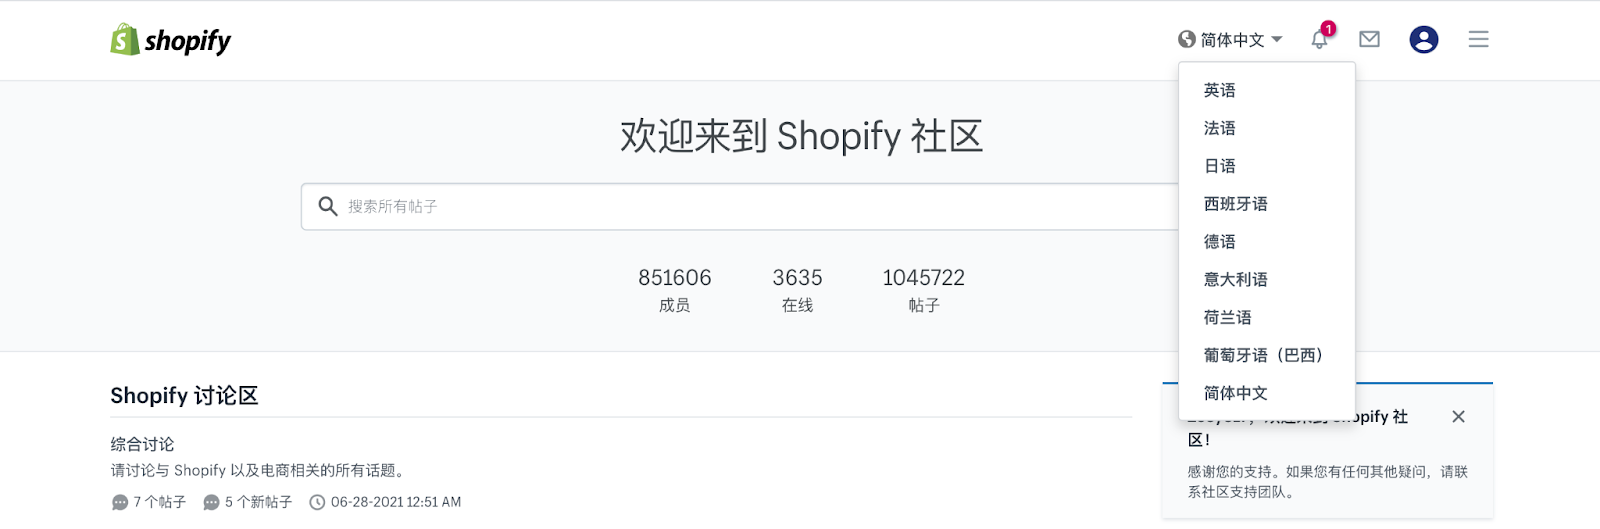 Shopify官方中文社区含多语言版本